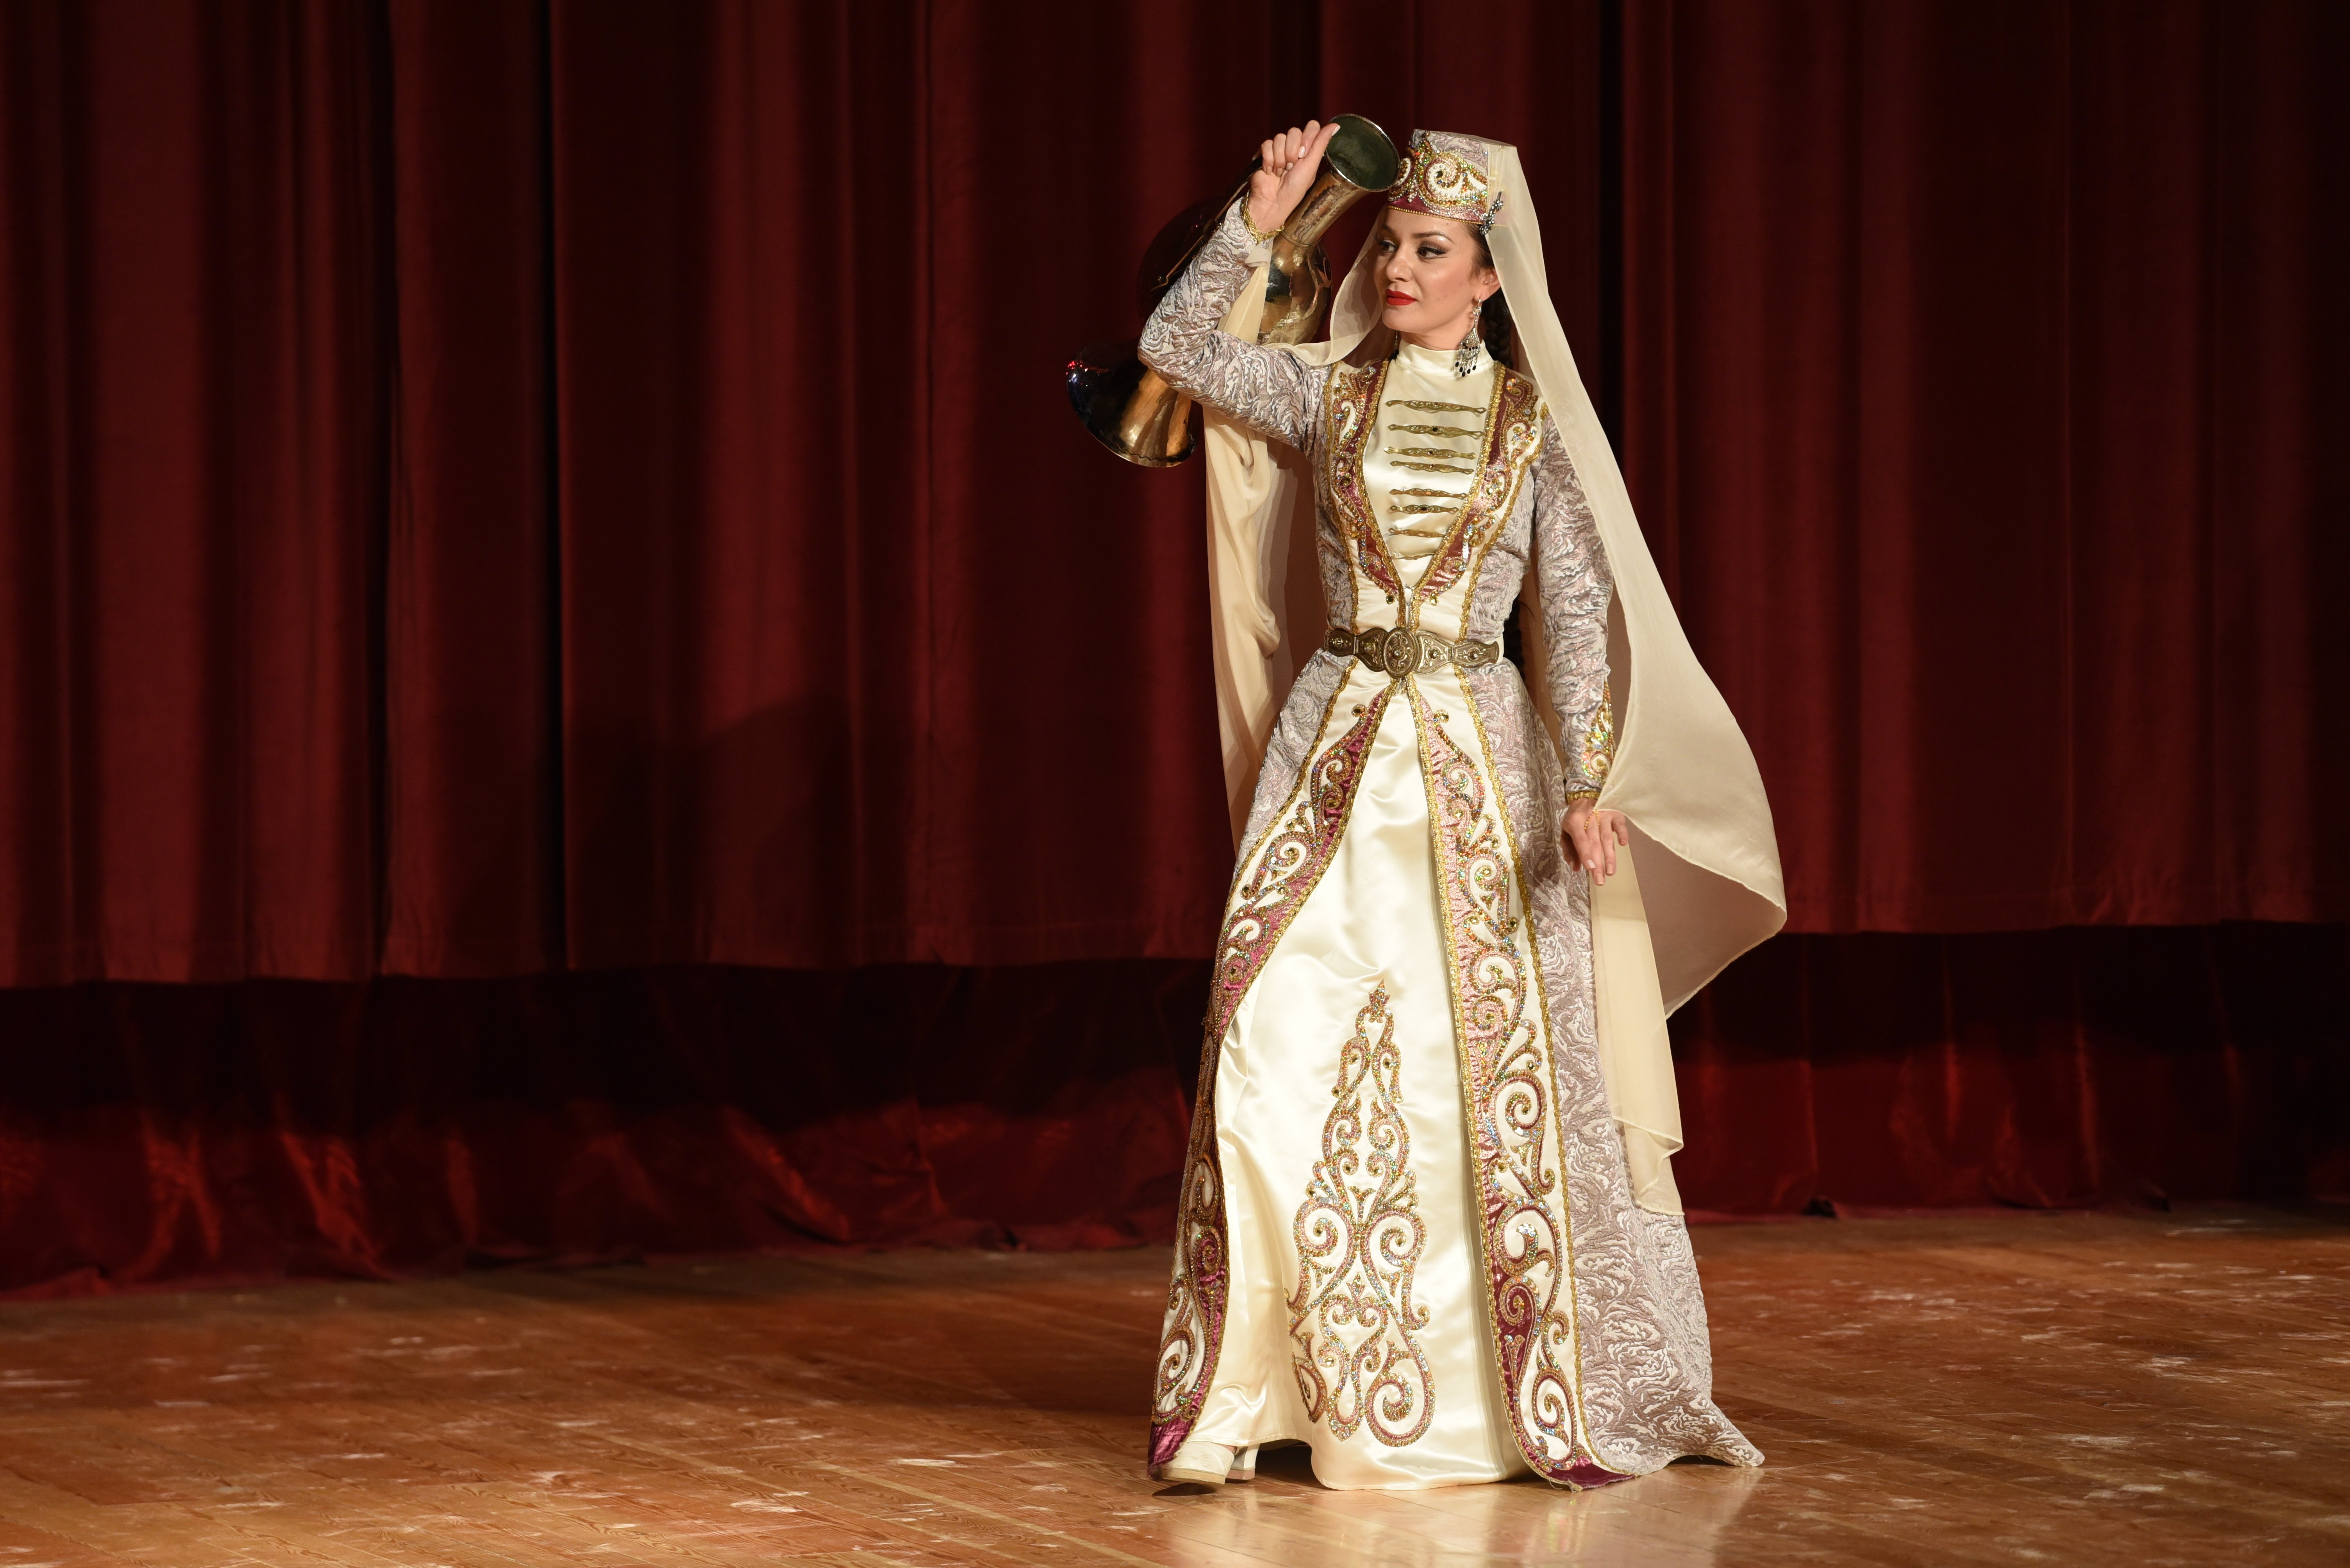 Национальный костюм осетинцев